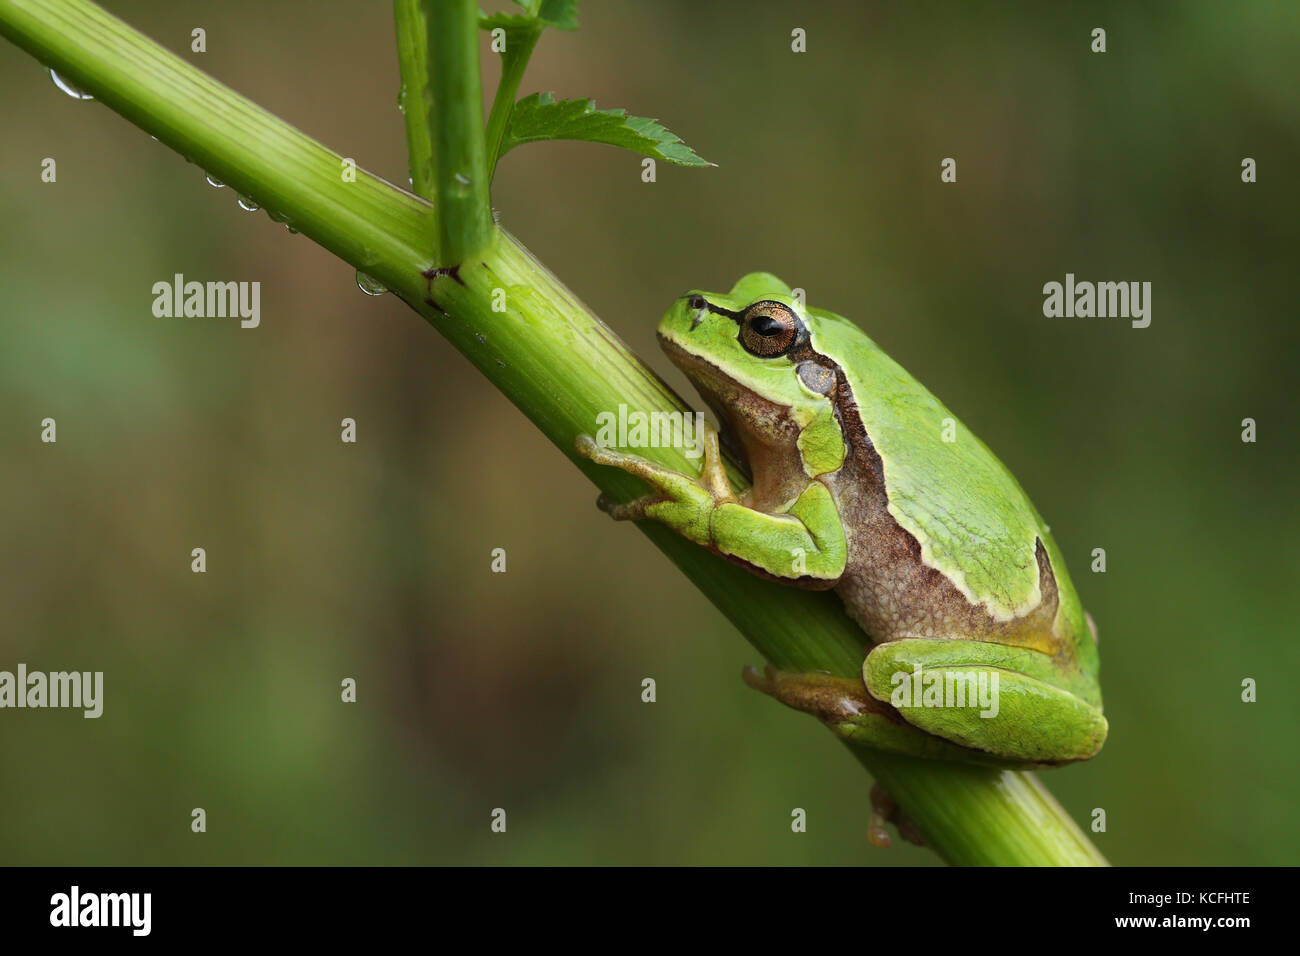 European tree frog (Hyla arborea) sur une plante verte Banque D'Images